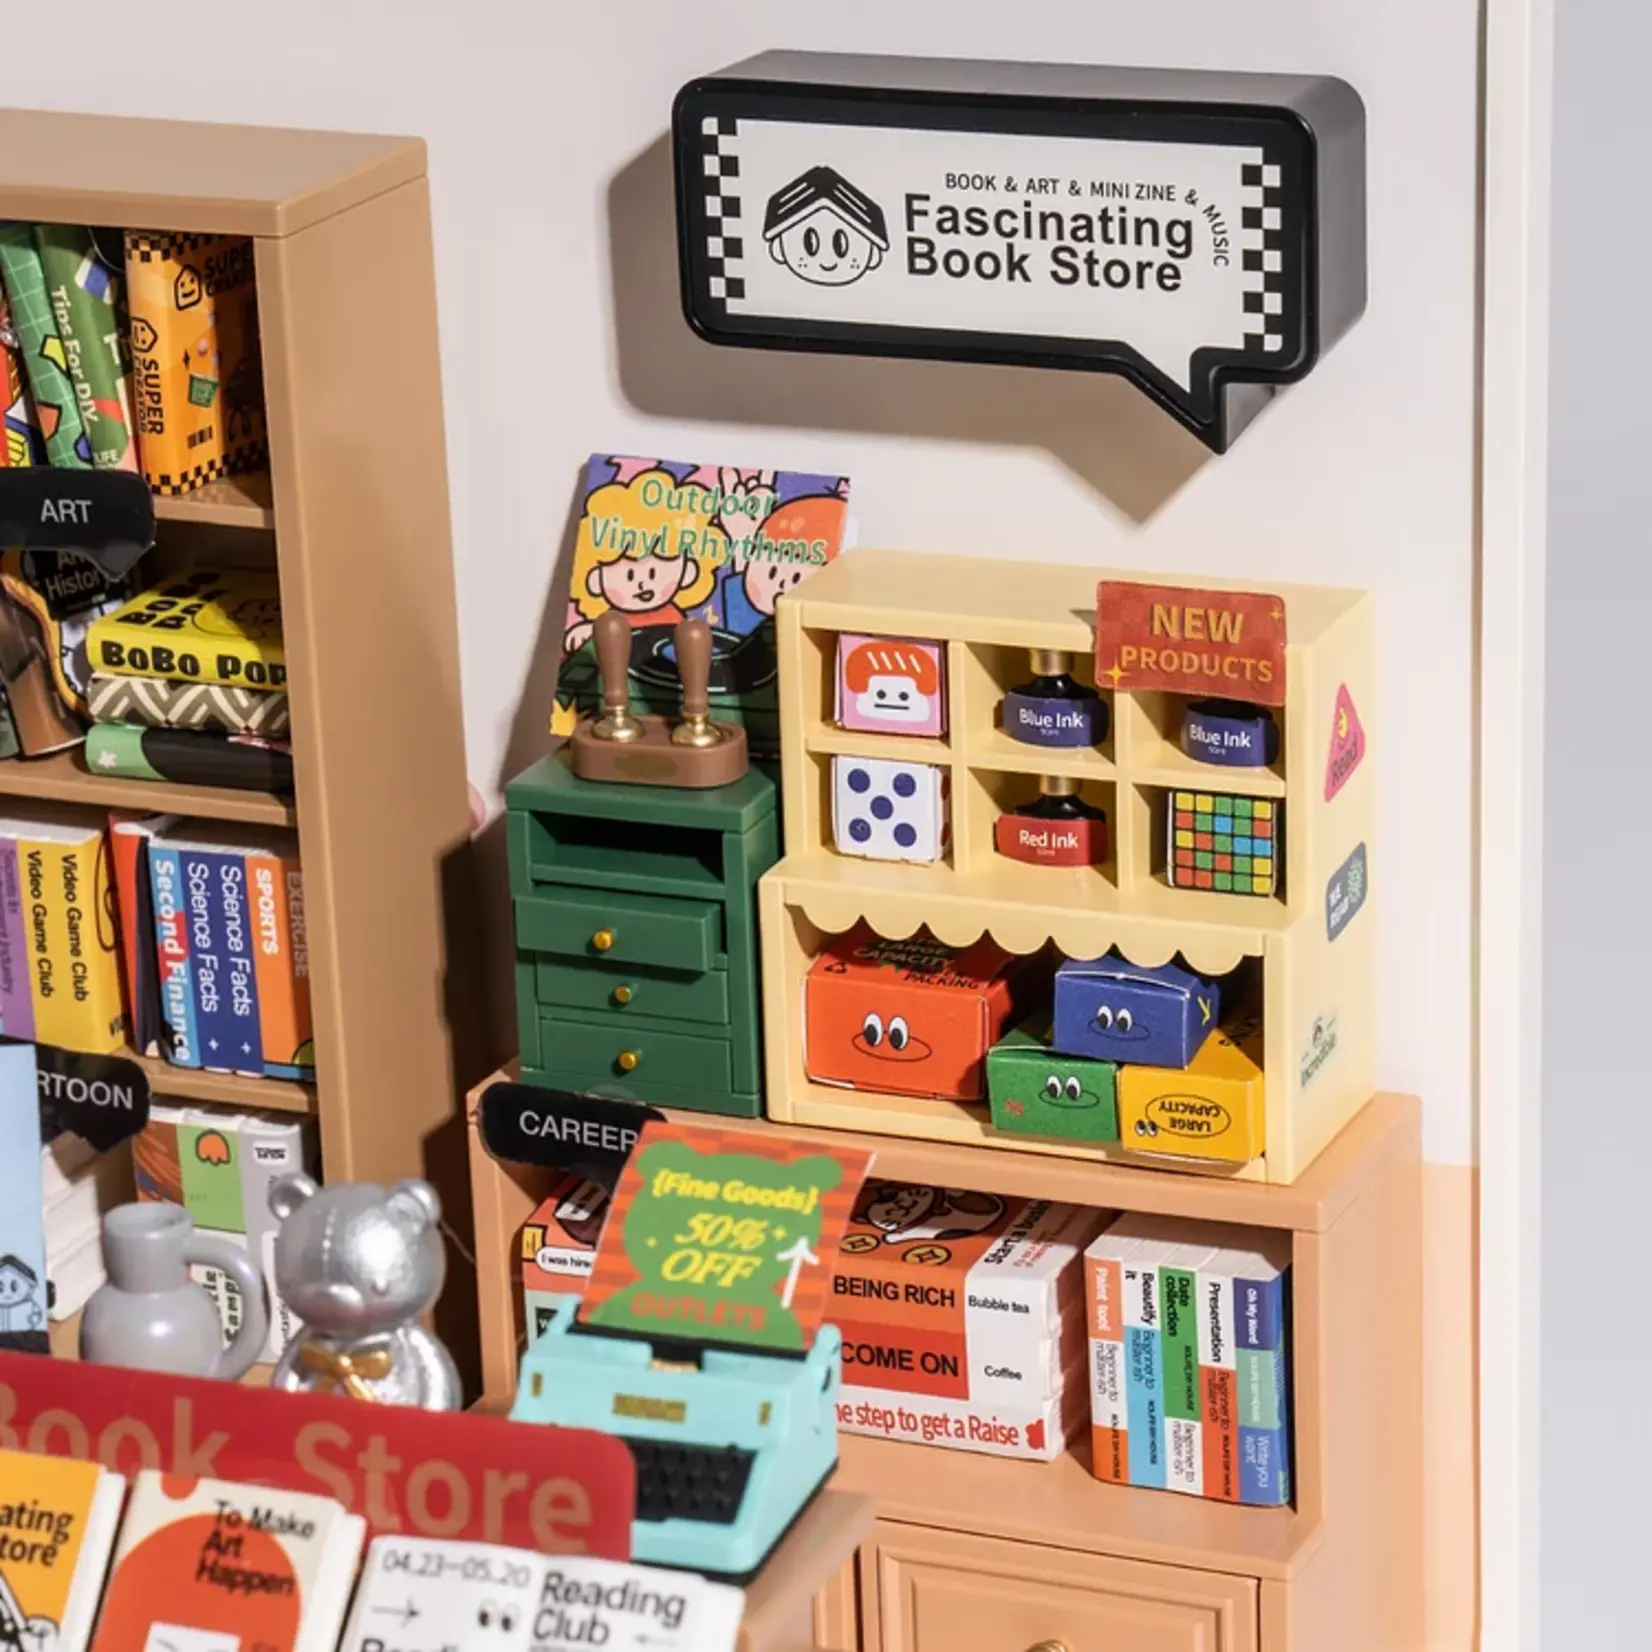 Fascinating Book Store Model Kit